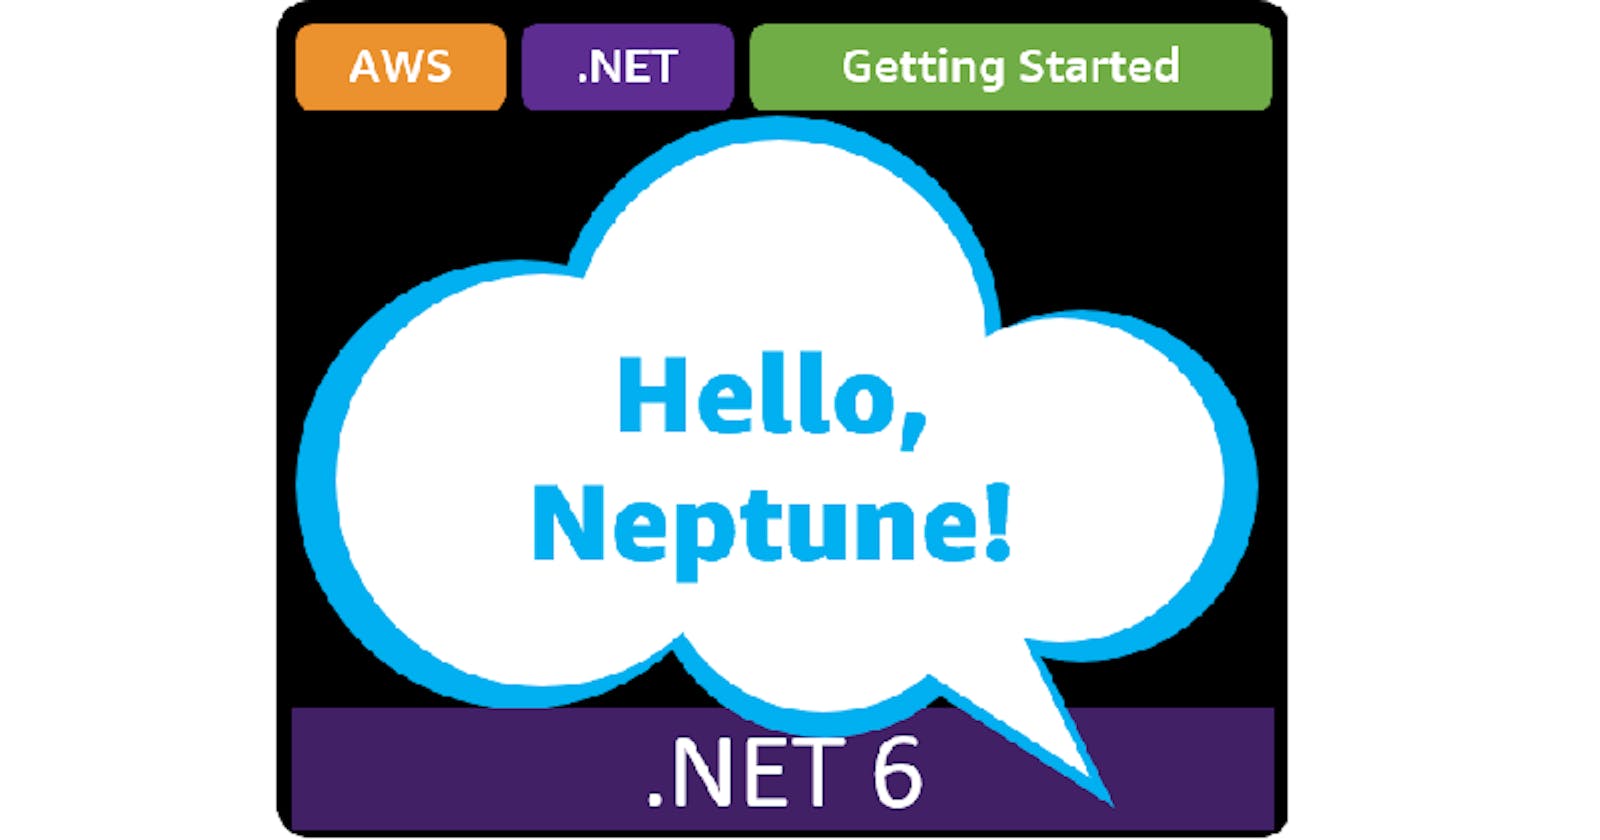 Hello, Neptune!